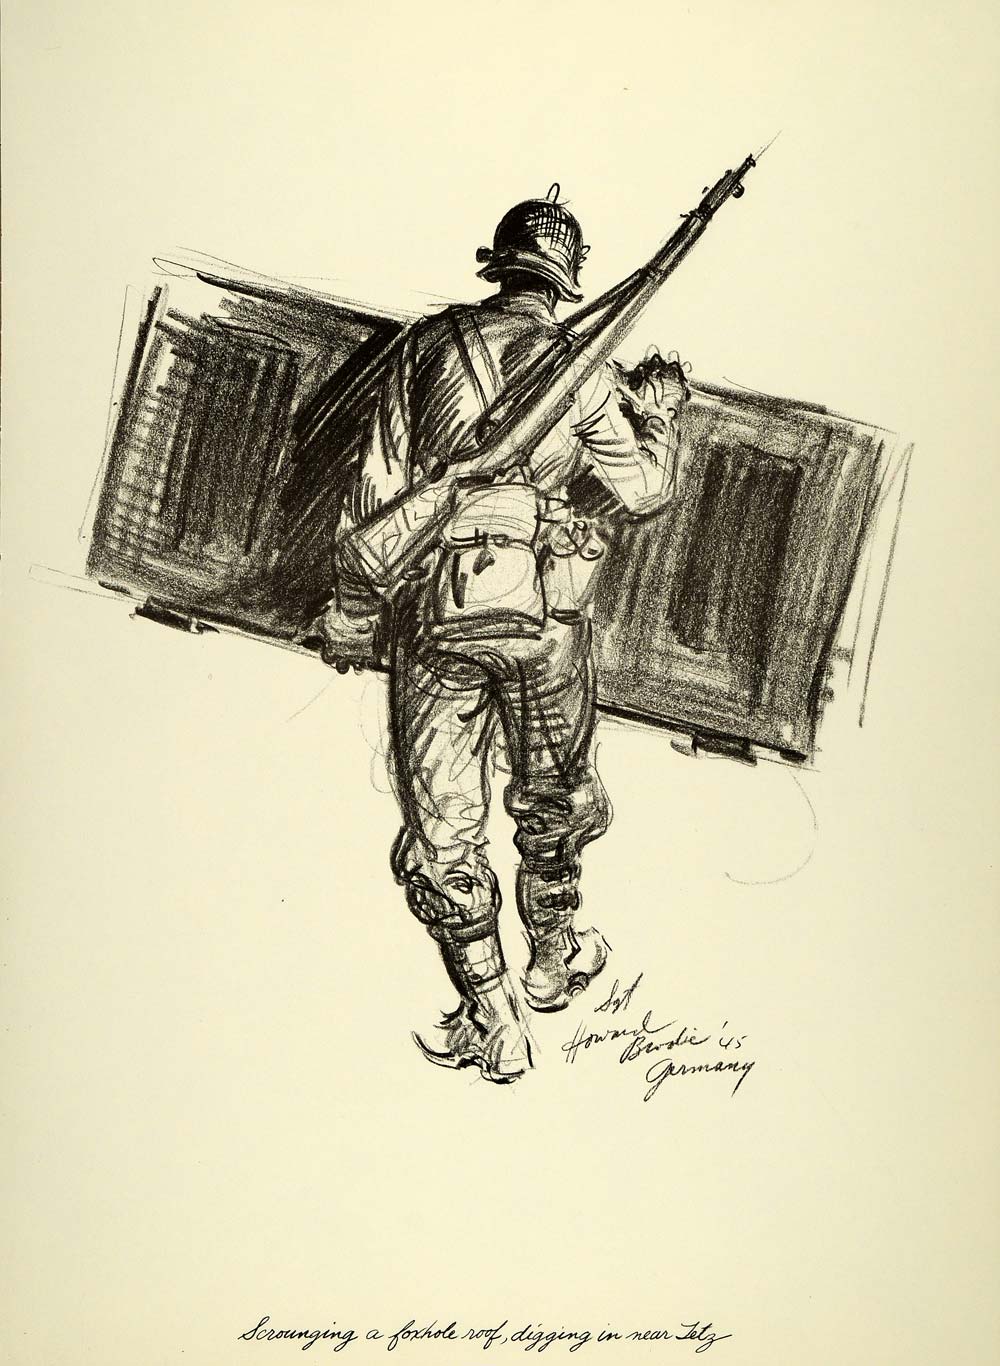 1963 Print Howard Brodie Art World War II U. S. Soldier Foxhole Roof Roer River